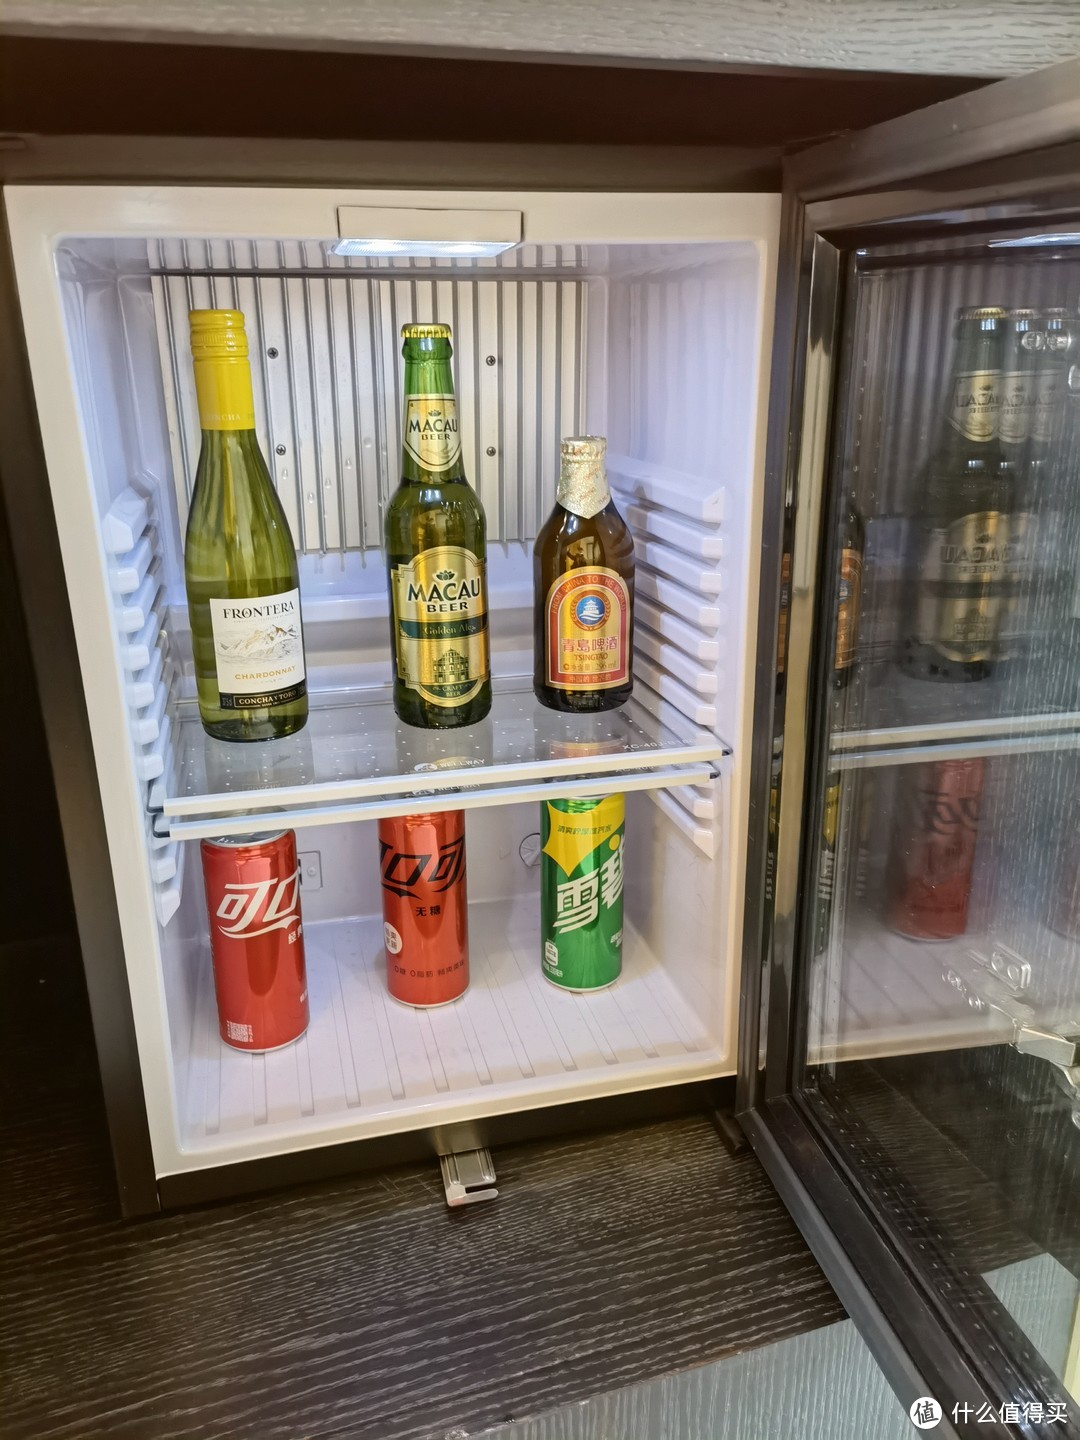 冰箱里面饮料，但要收费